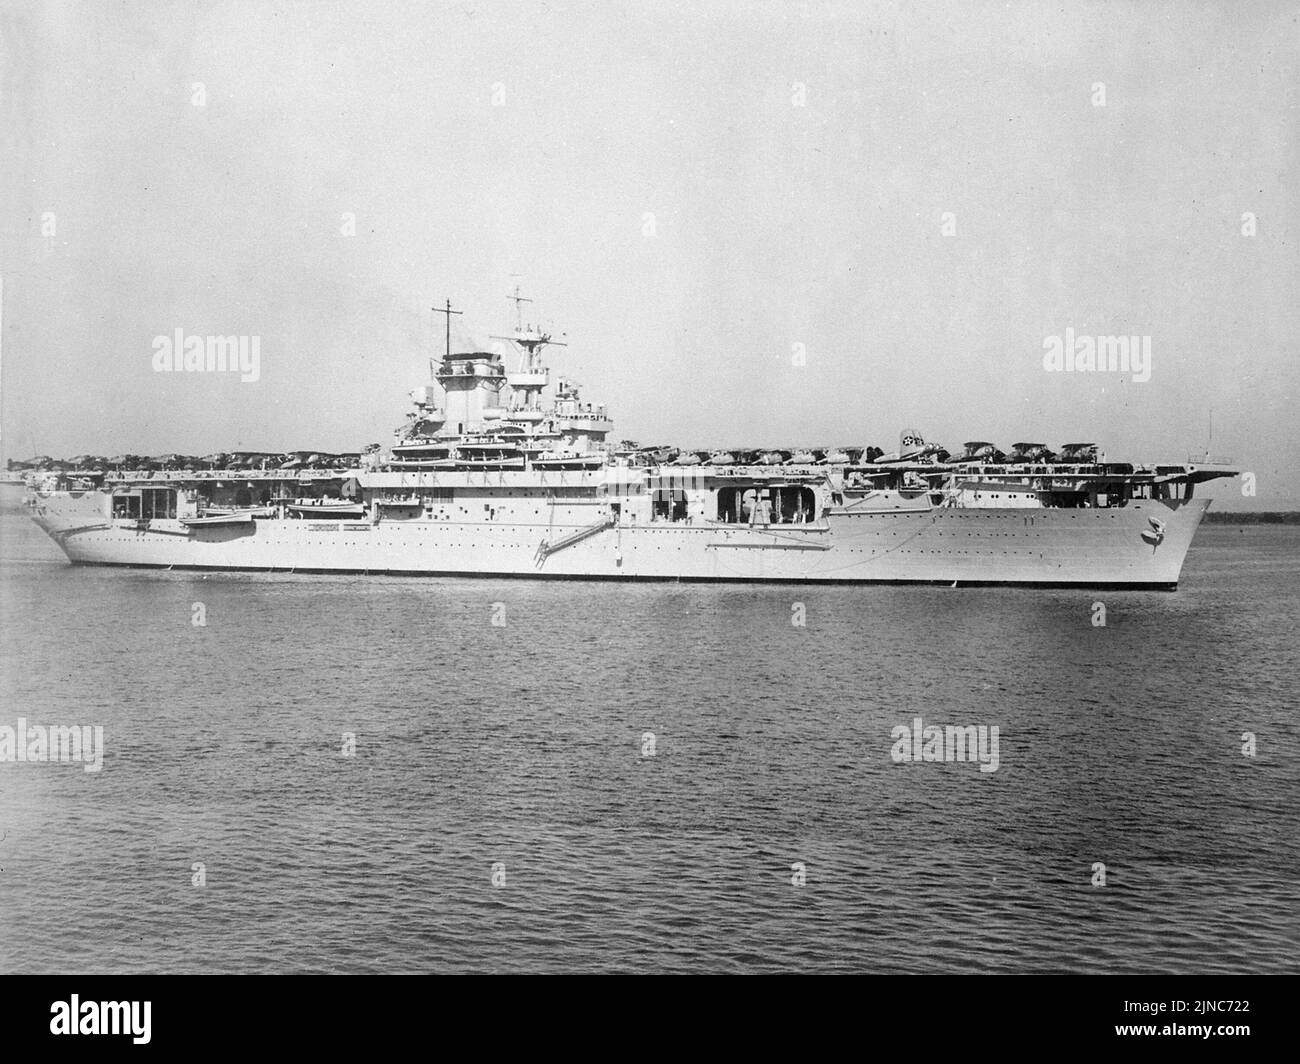 Le porte-avions américain USS Wasp le 27 décembre 1940. L'USS Wasp a été coulé deux ans plus tard après avoir été torpillé pendant l'invasion de Guadalcanal en septembre 1942. Banque D'Images